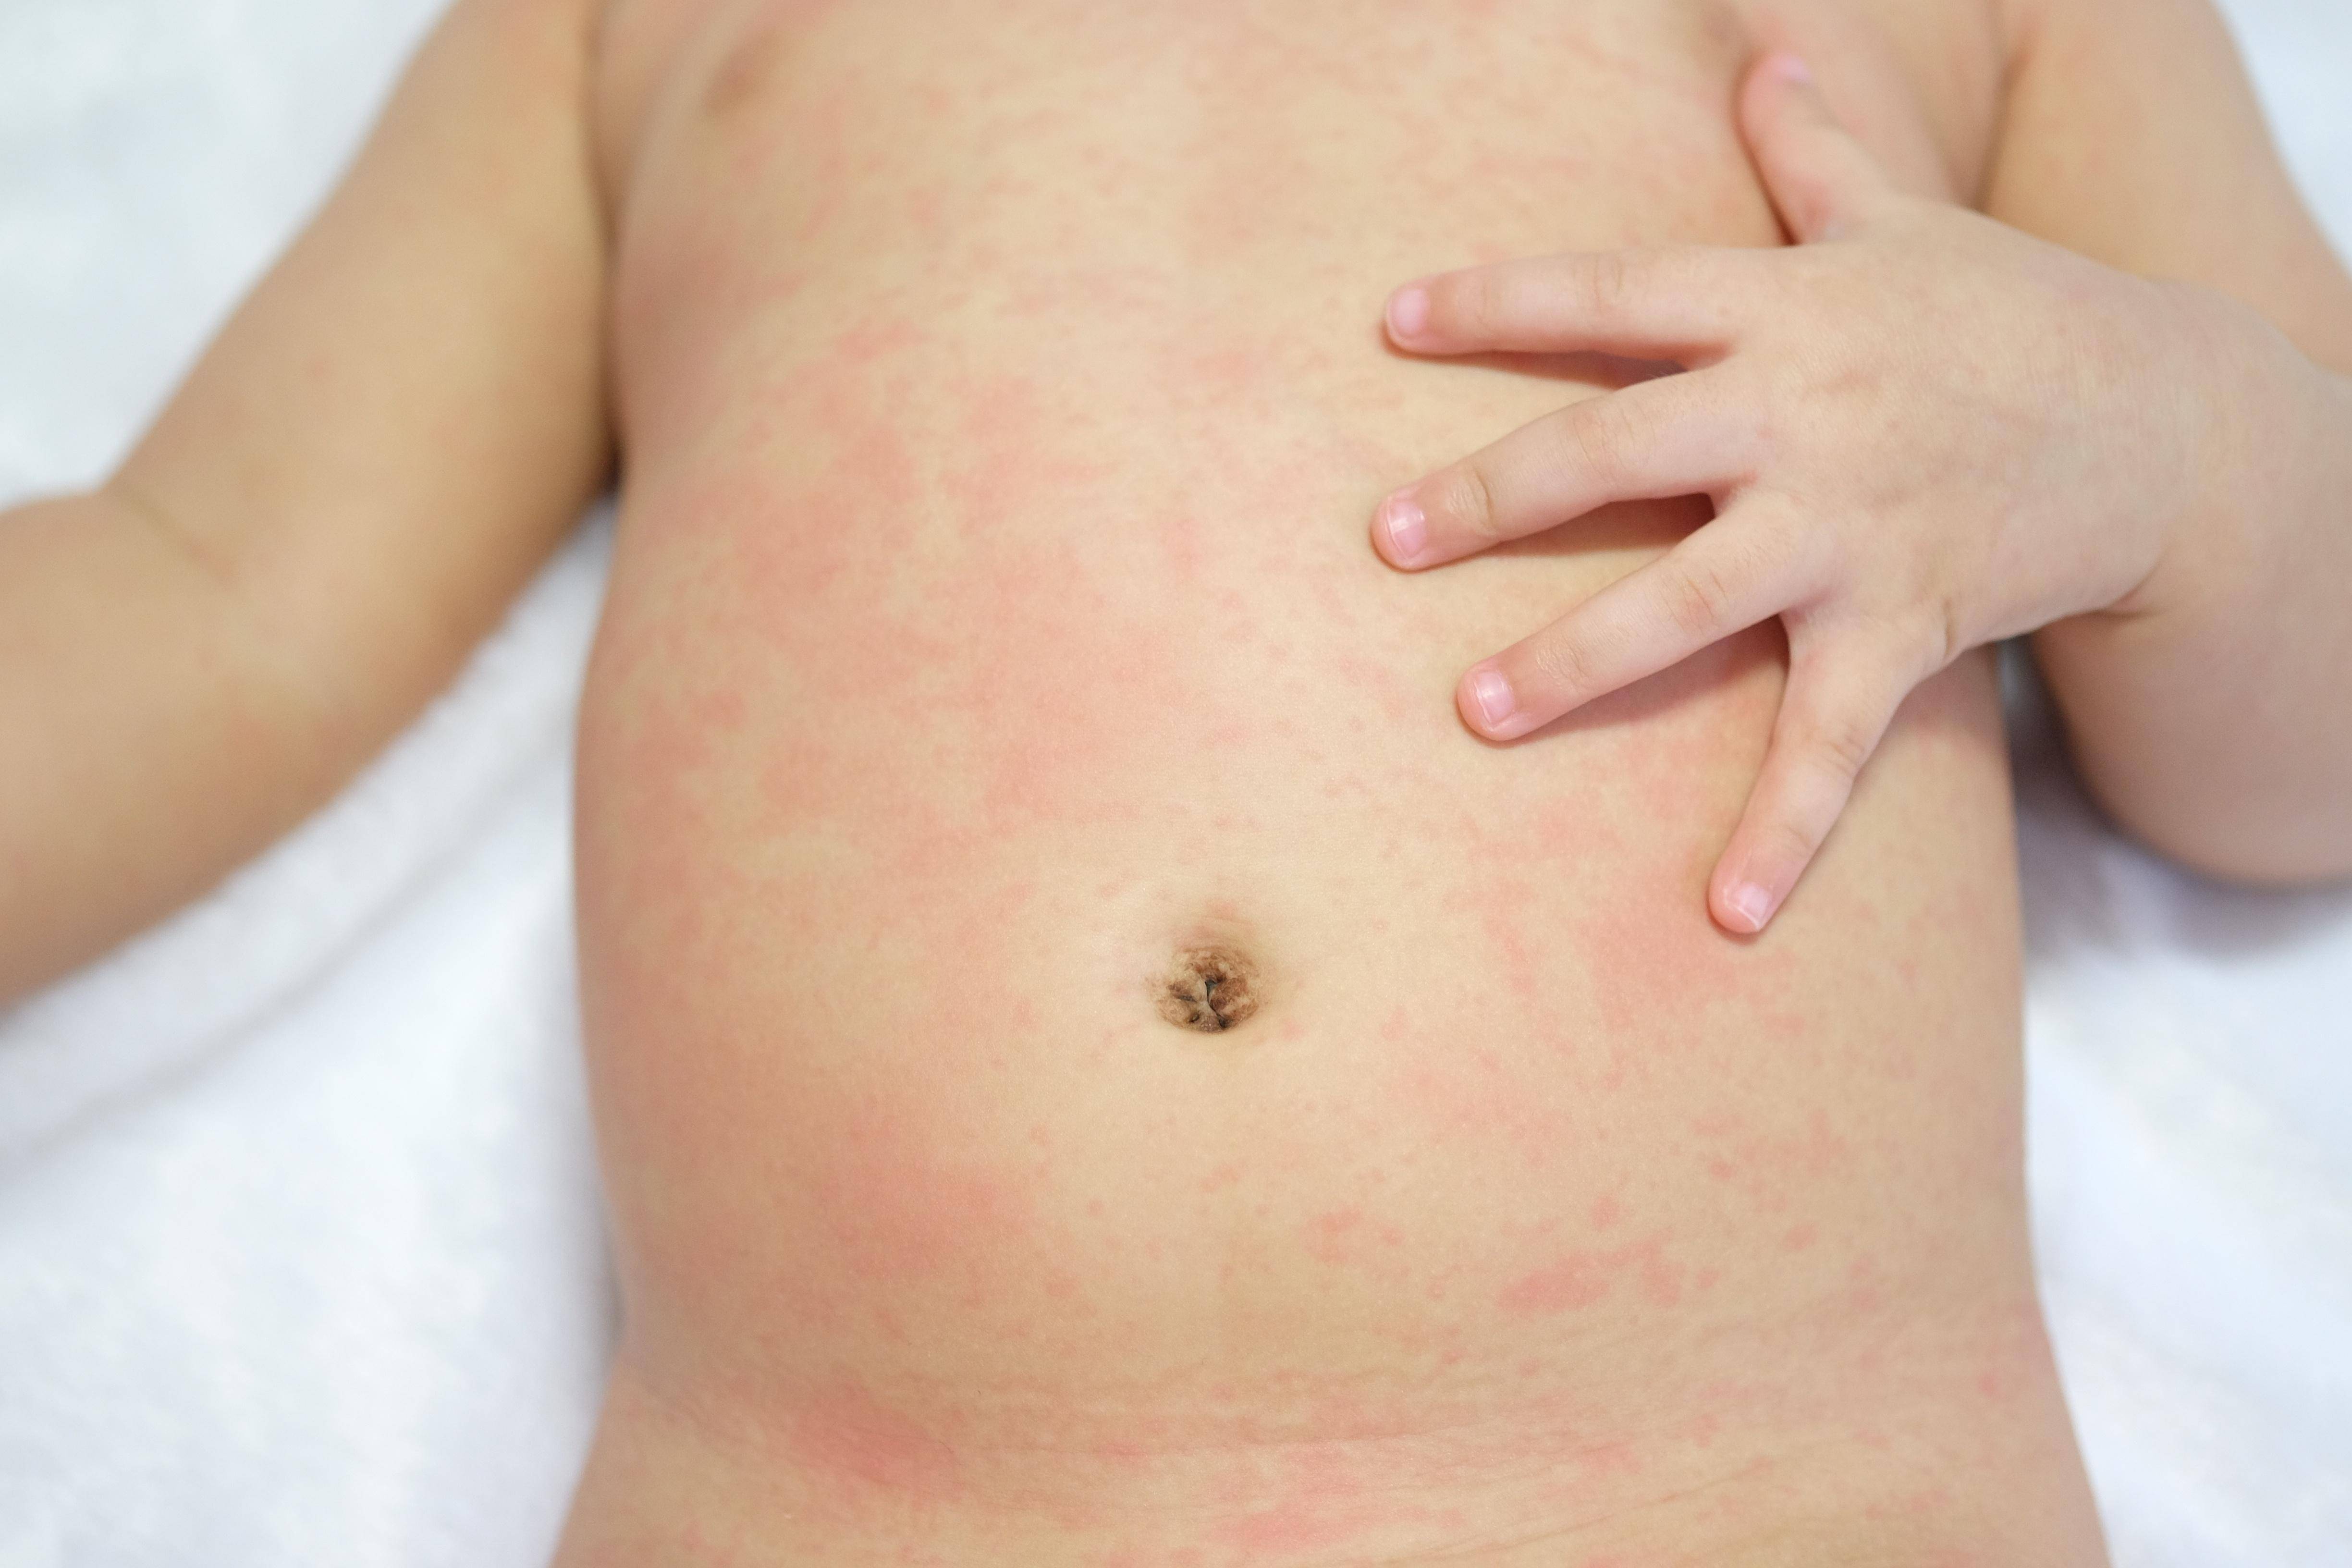 Сыпь у новорожденных аллергия, или неонатальный  пустолез?